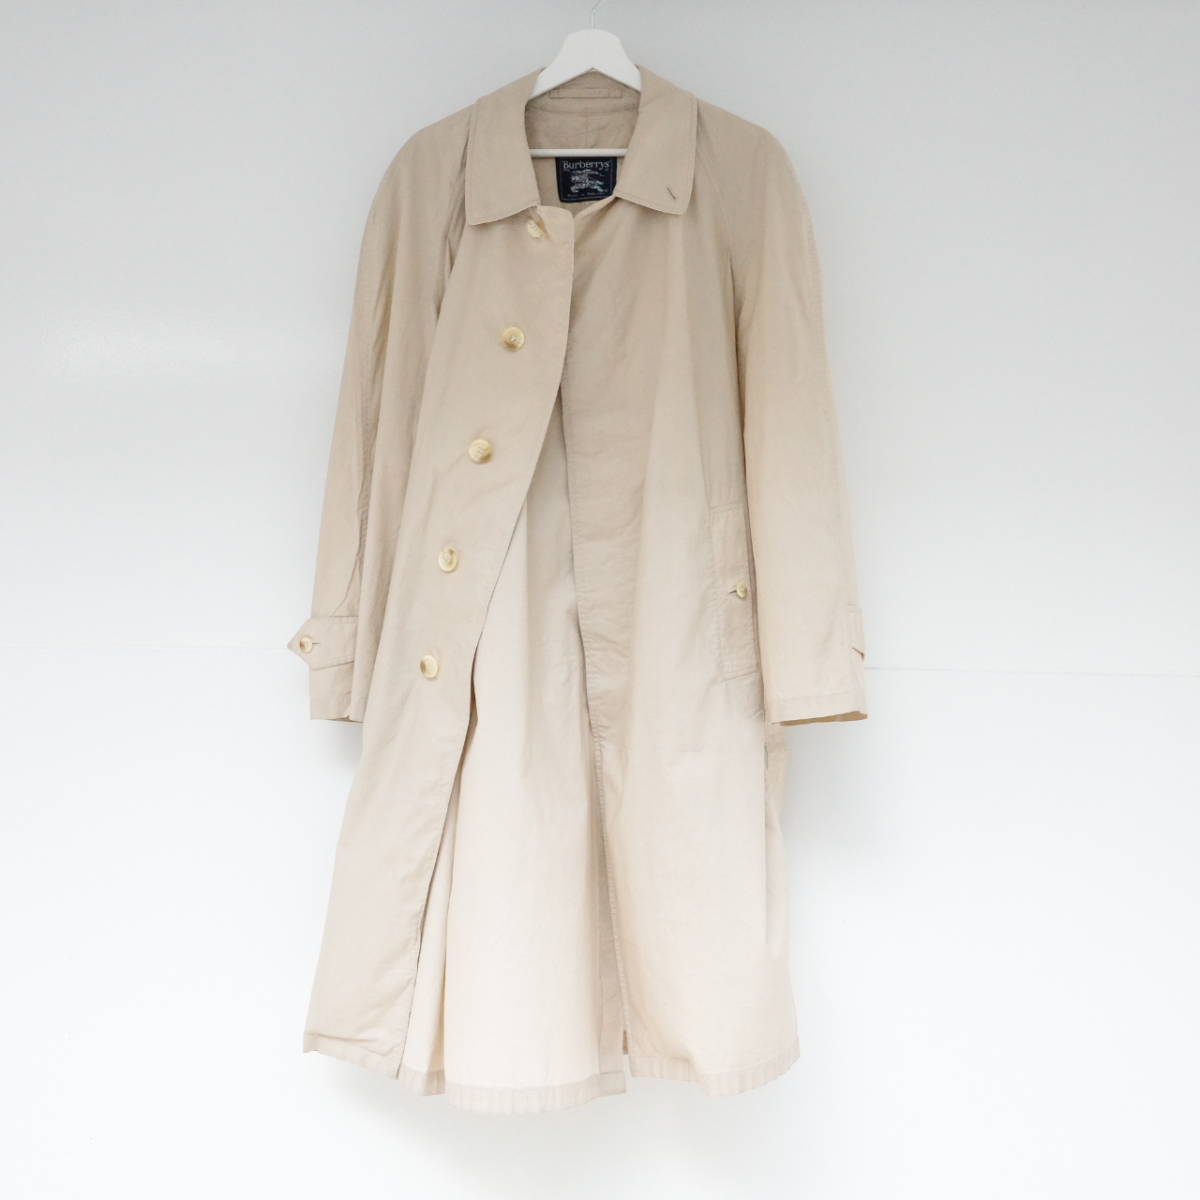 【値下げ】 size48 100%COTTON coat balmacaan lining no cotton Burberry MADE スプリングコート ステンカラー バーバリー ENGLAND IN Lサイズ